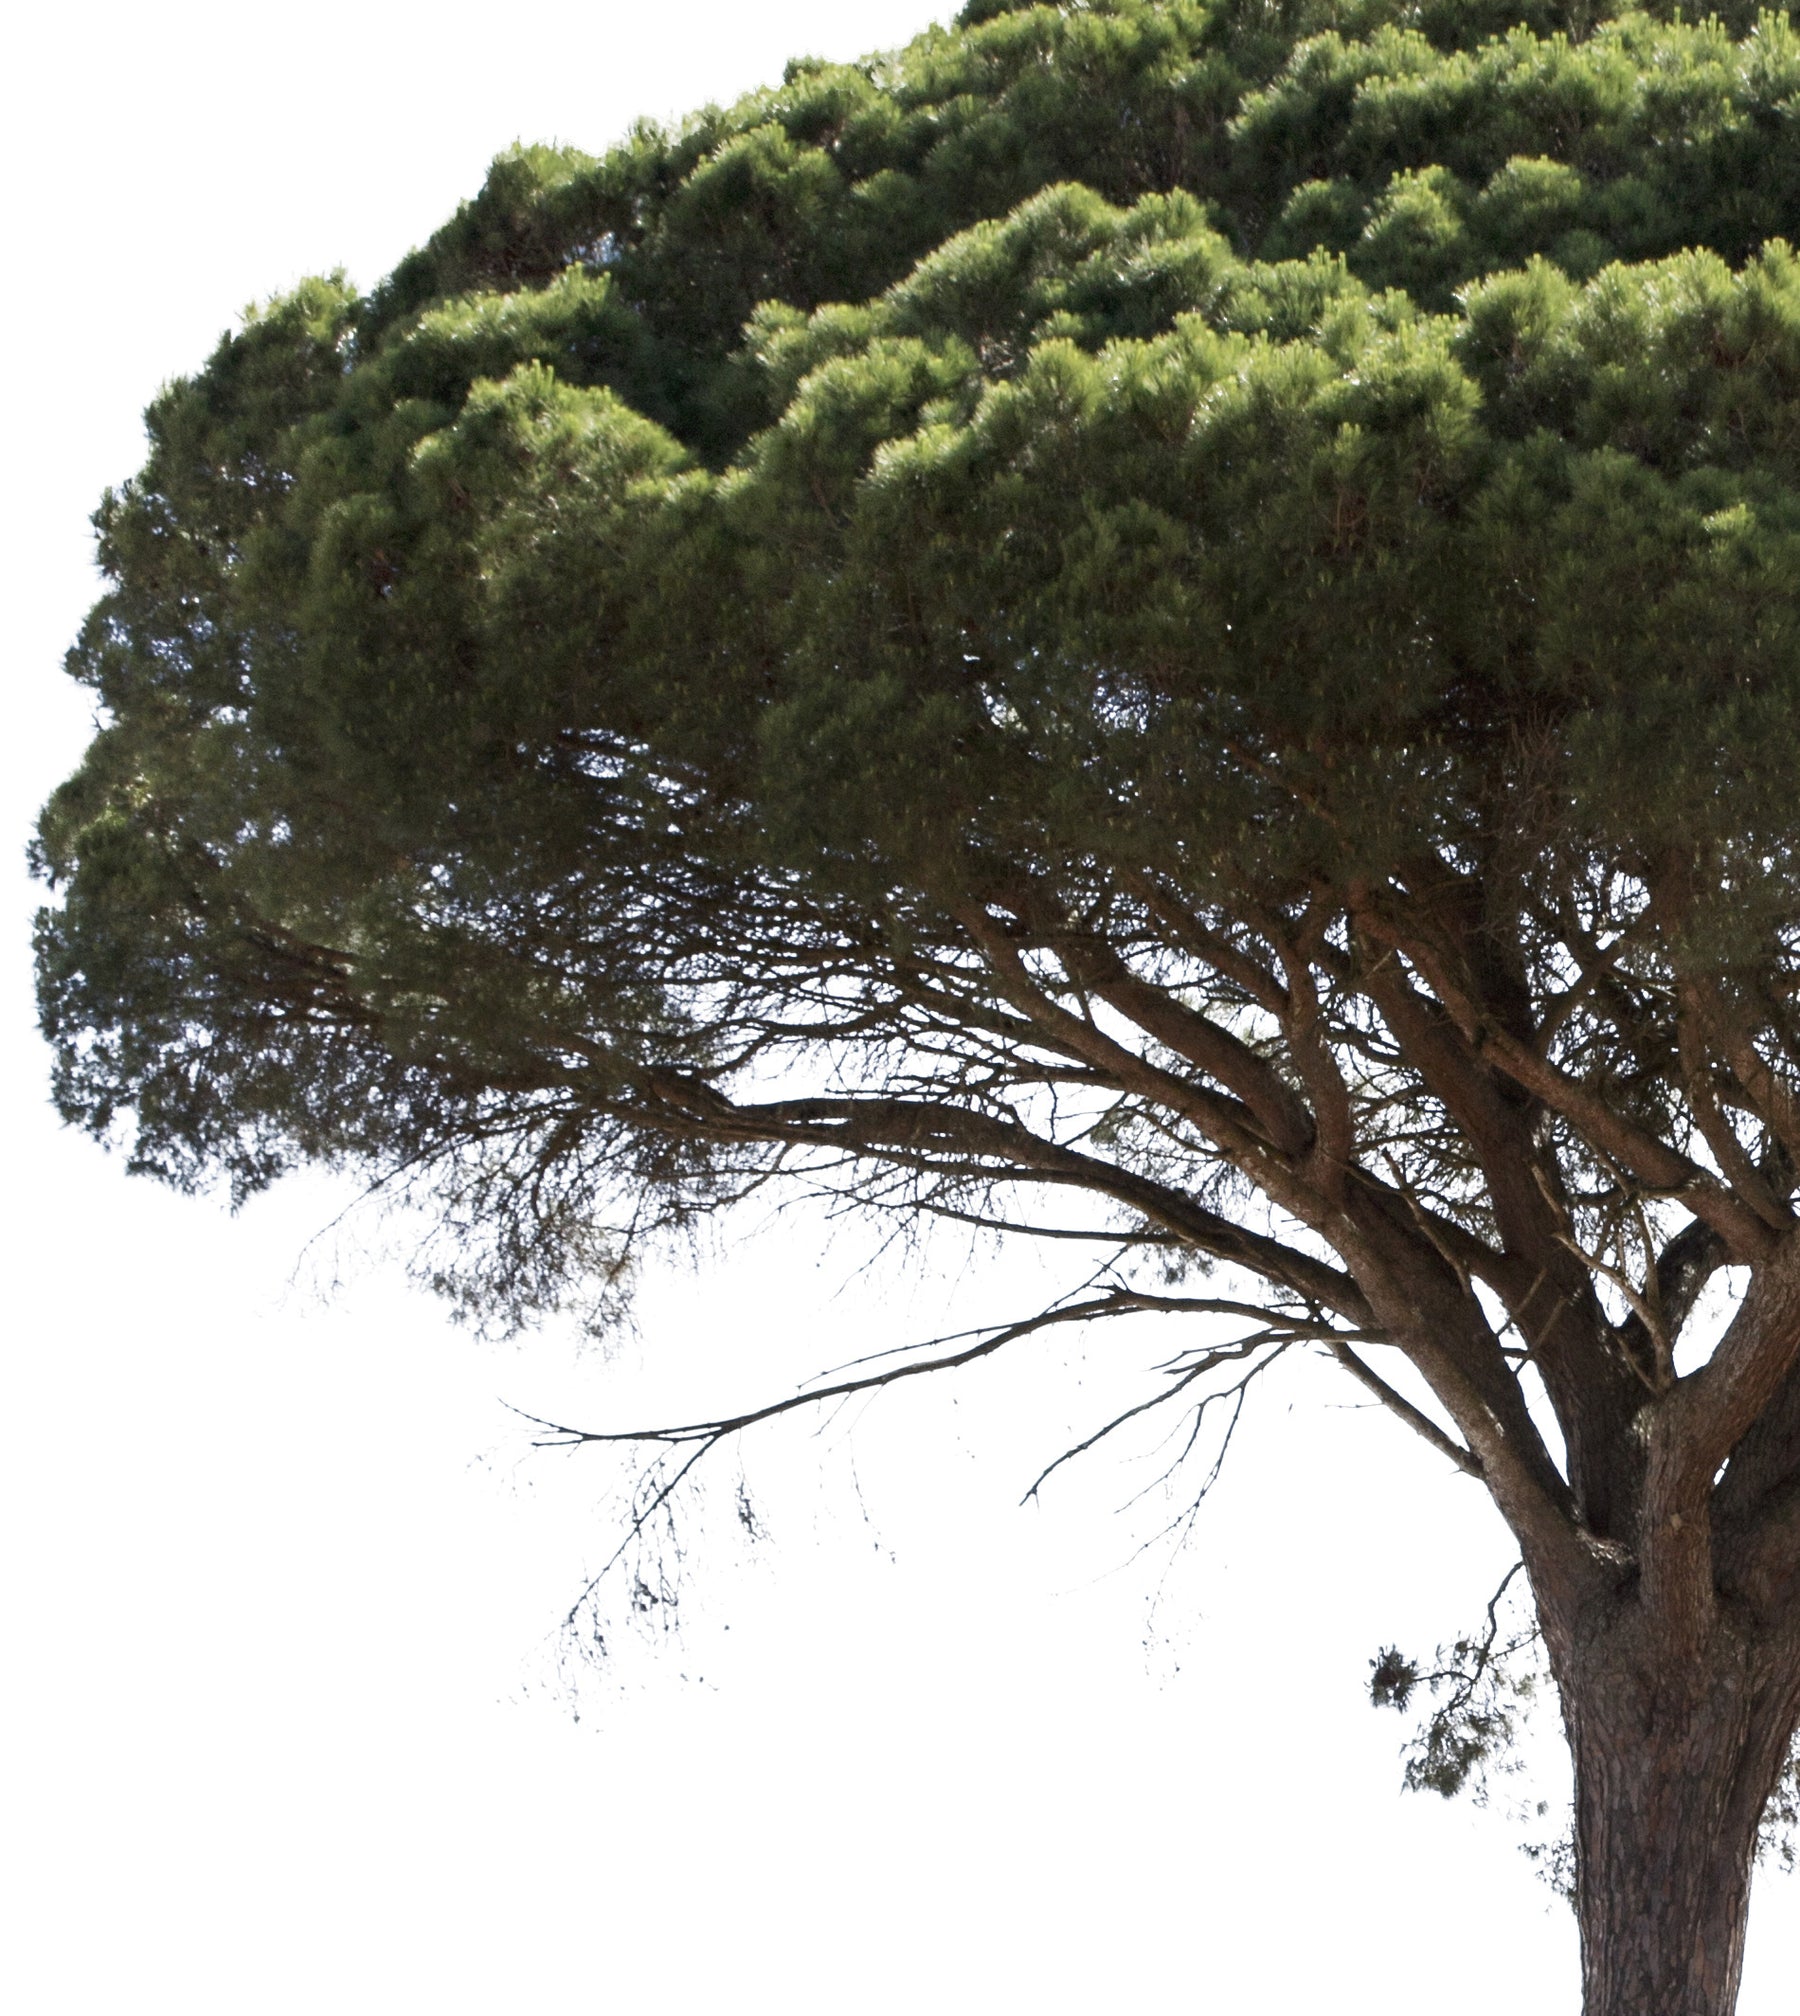 Pinus pinea II - cutout trees